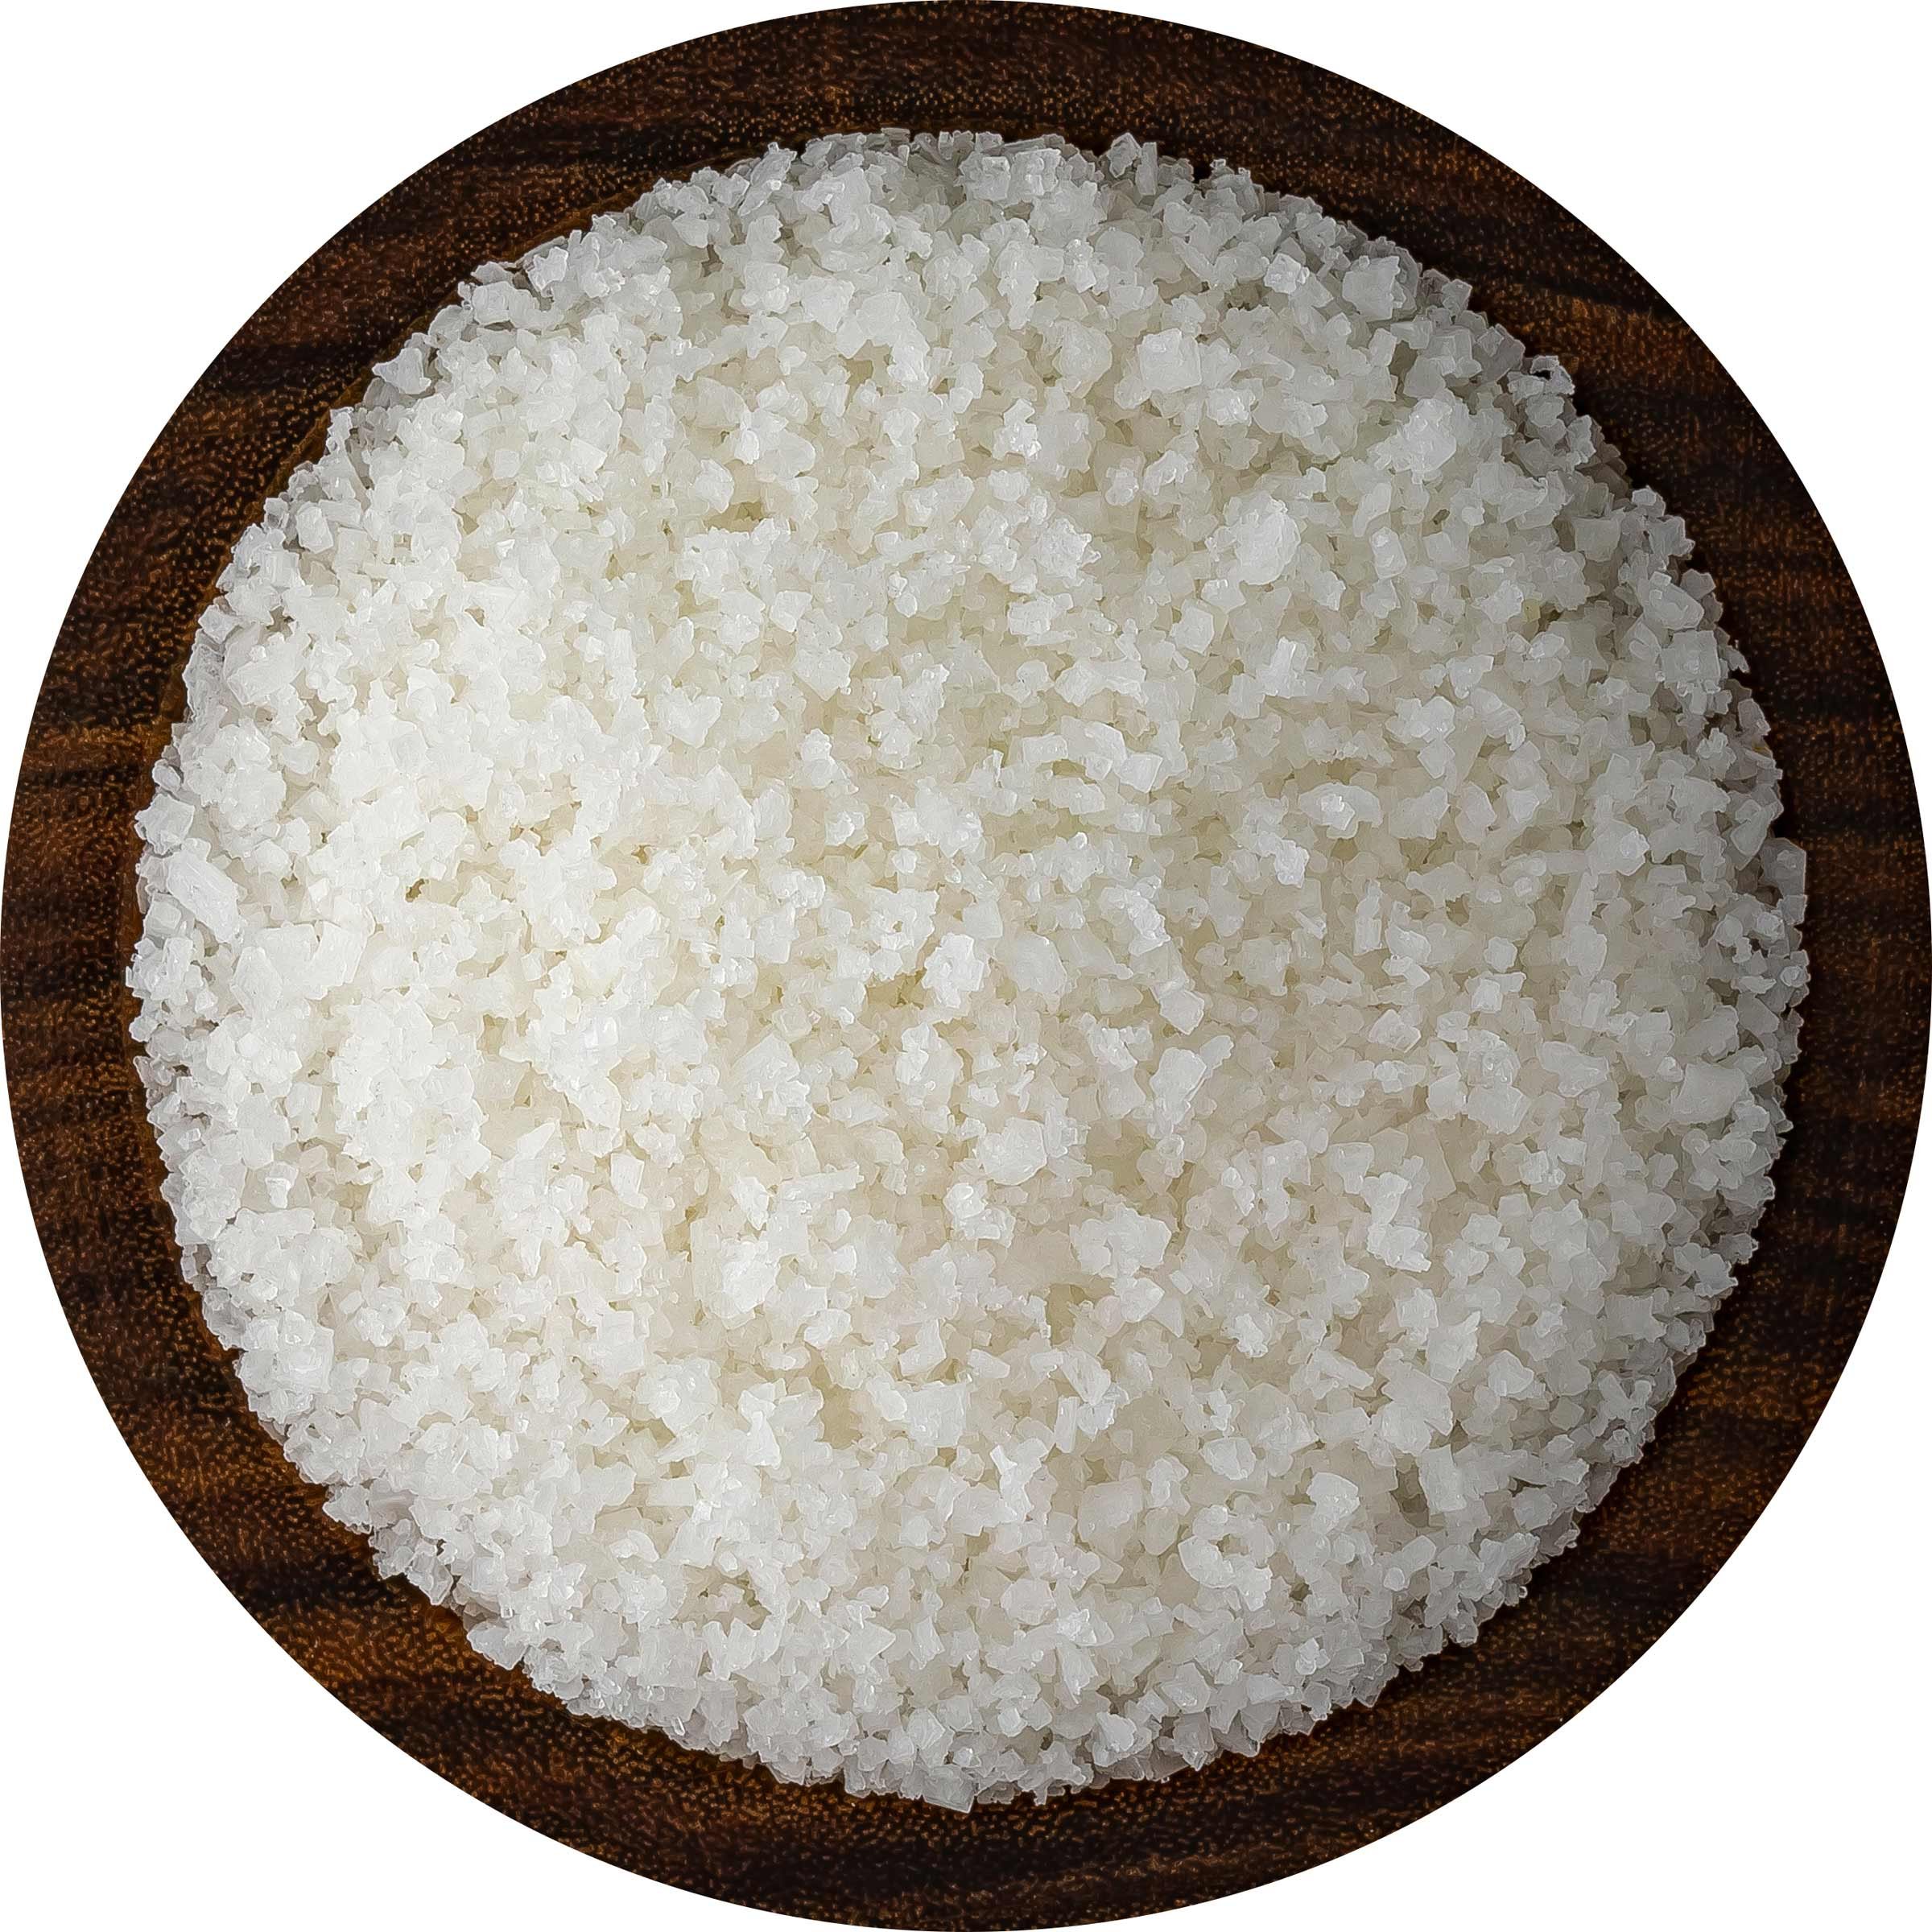 Celtic Sea Salt: A Moist Breton Salt